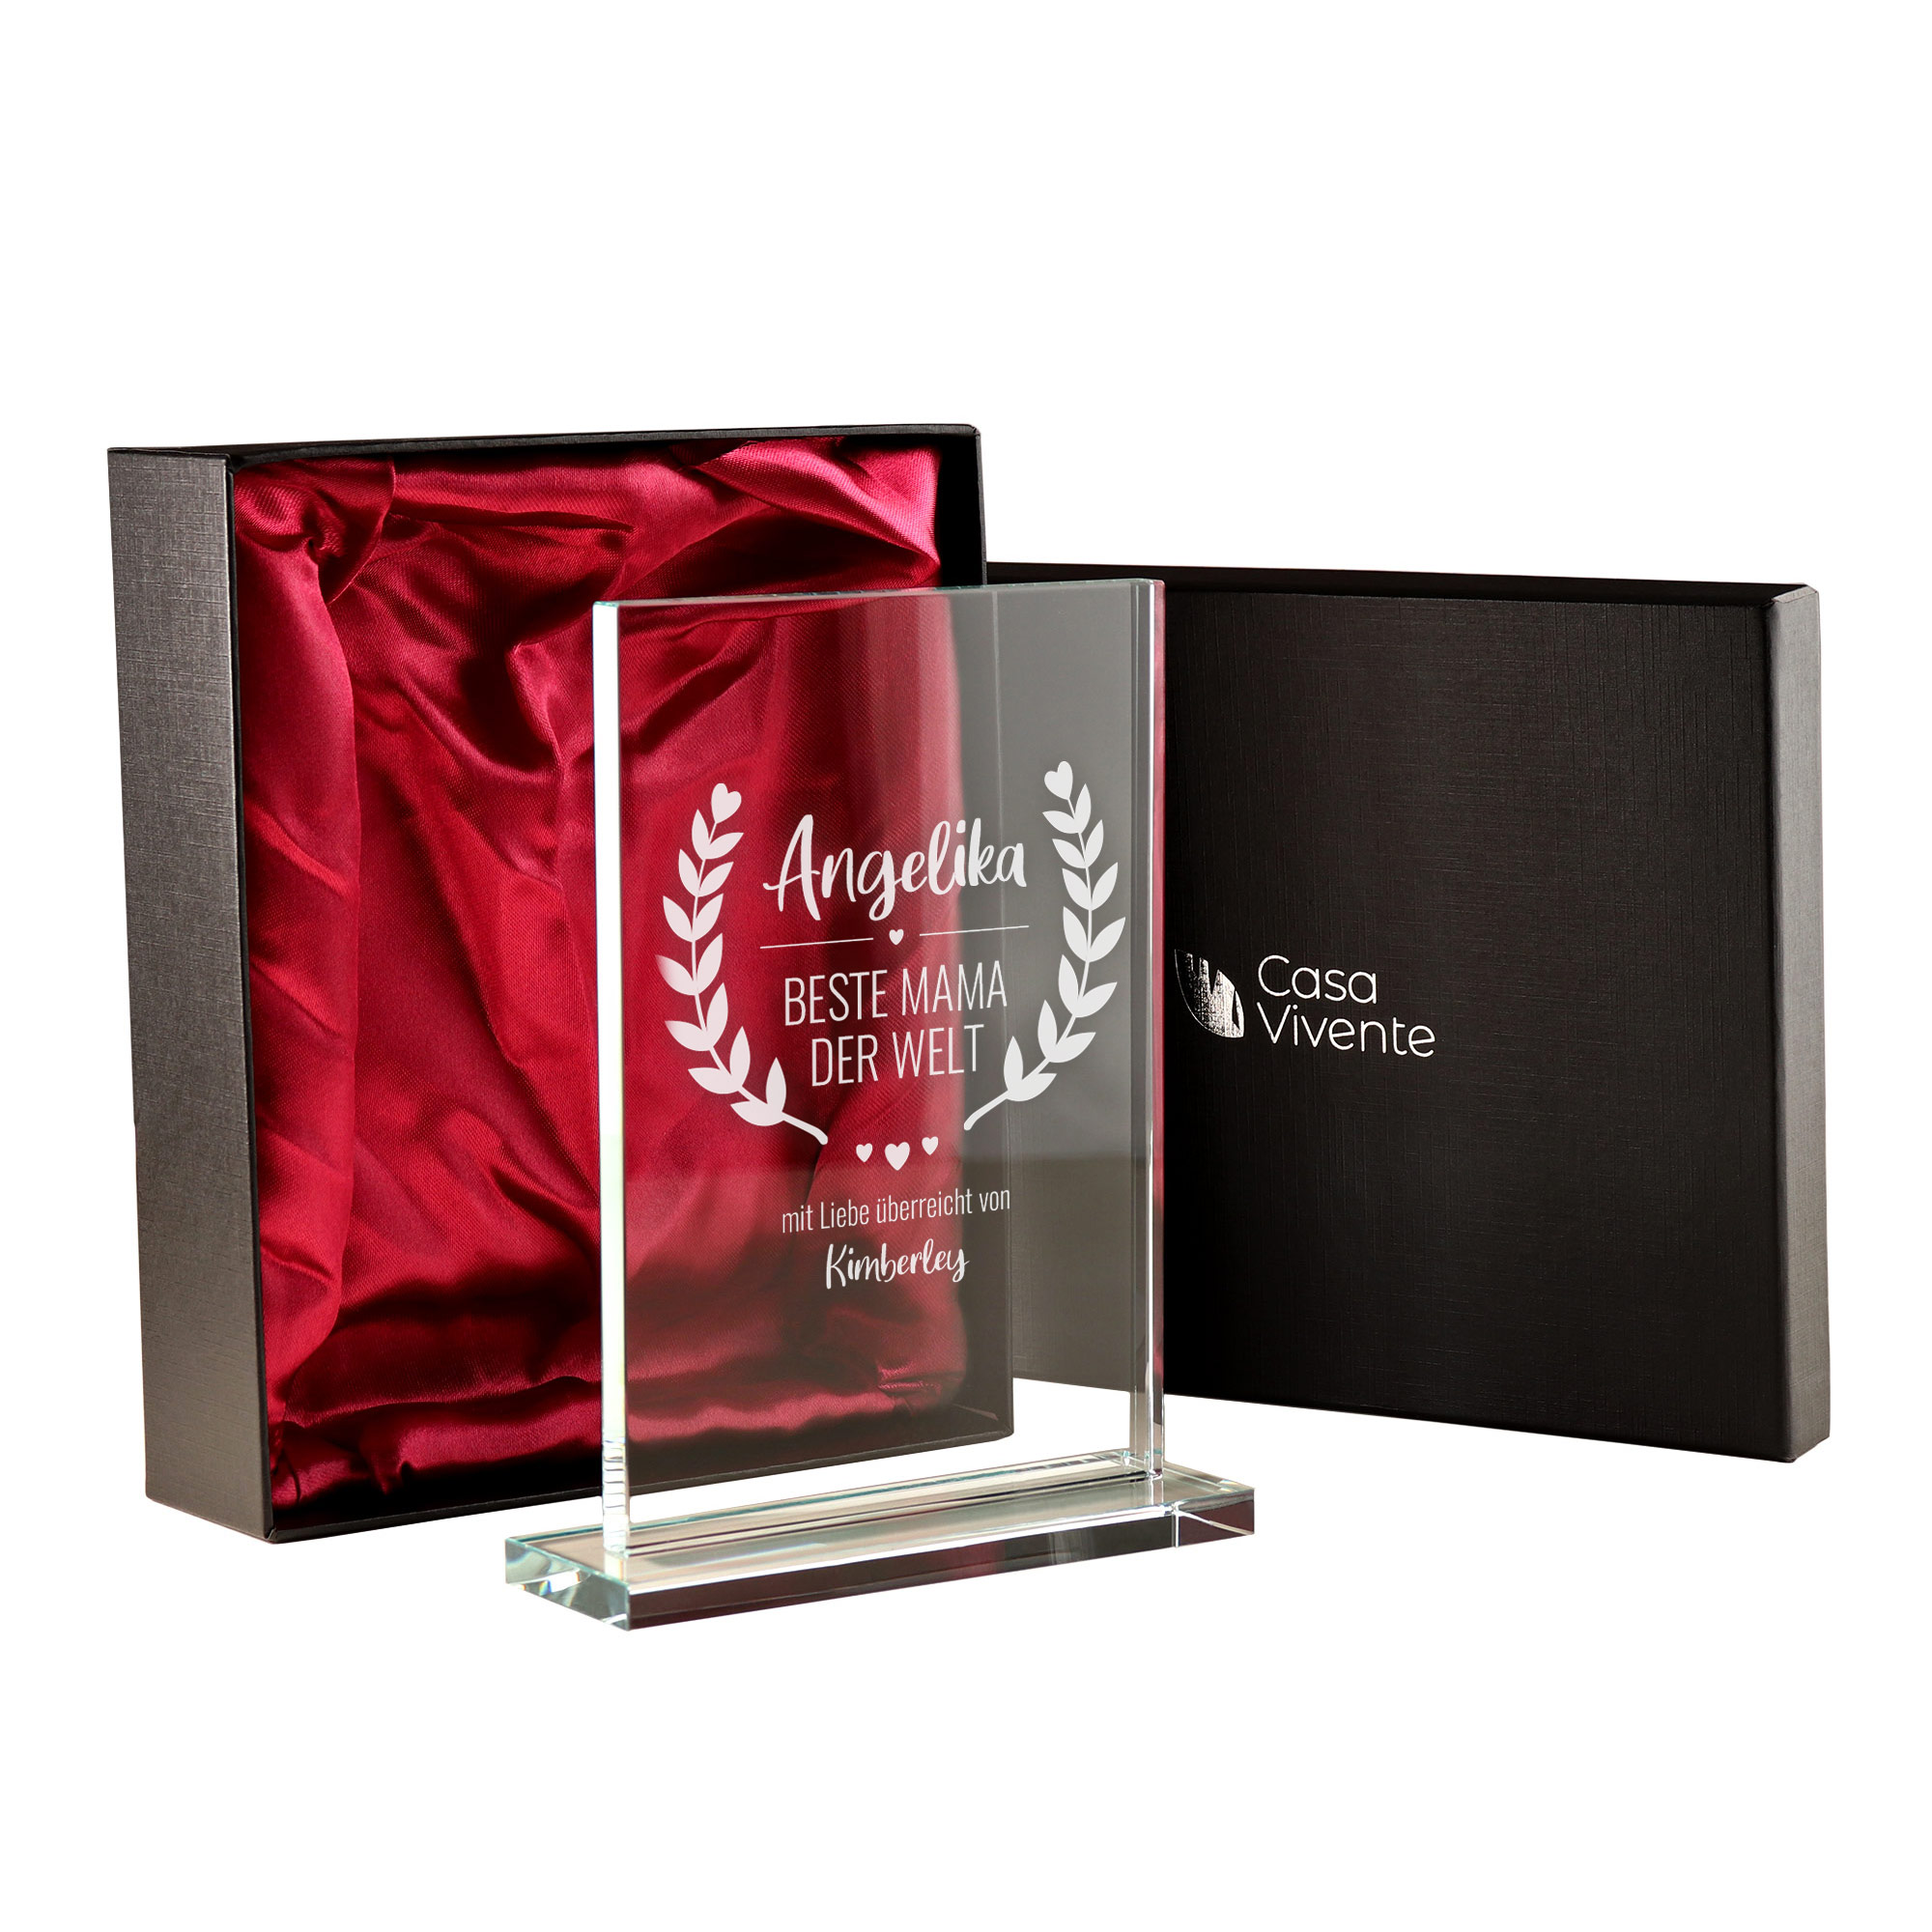 Pokal aus Glas mit Gravur für Mutti, Gravierte Glasdeko als Geschenk zum Muttertag, Personalisierter Glaspokal als Auszeichnung für deine Mama